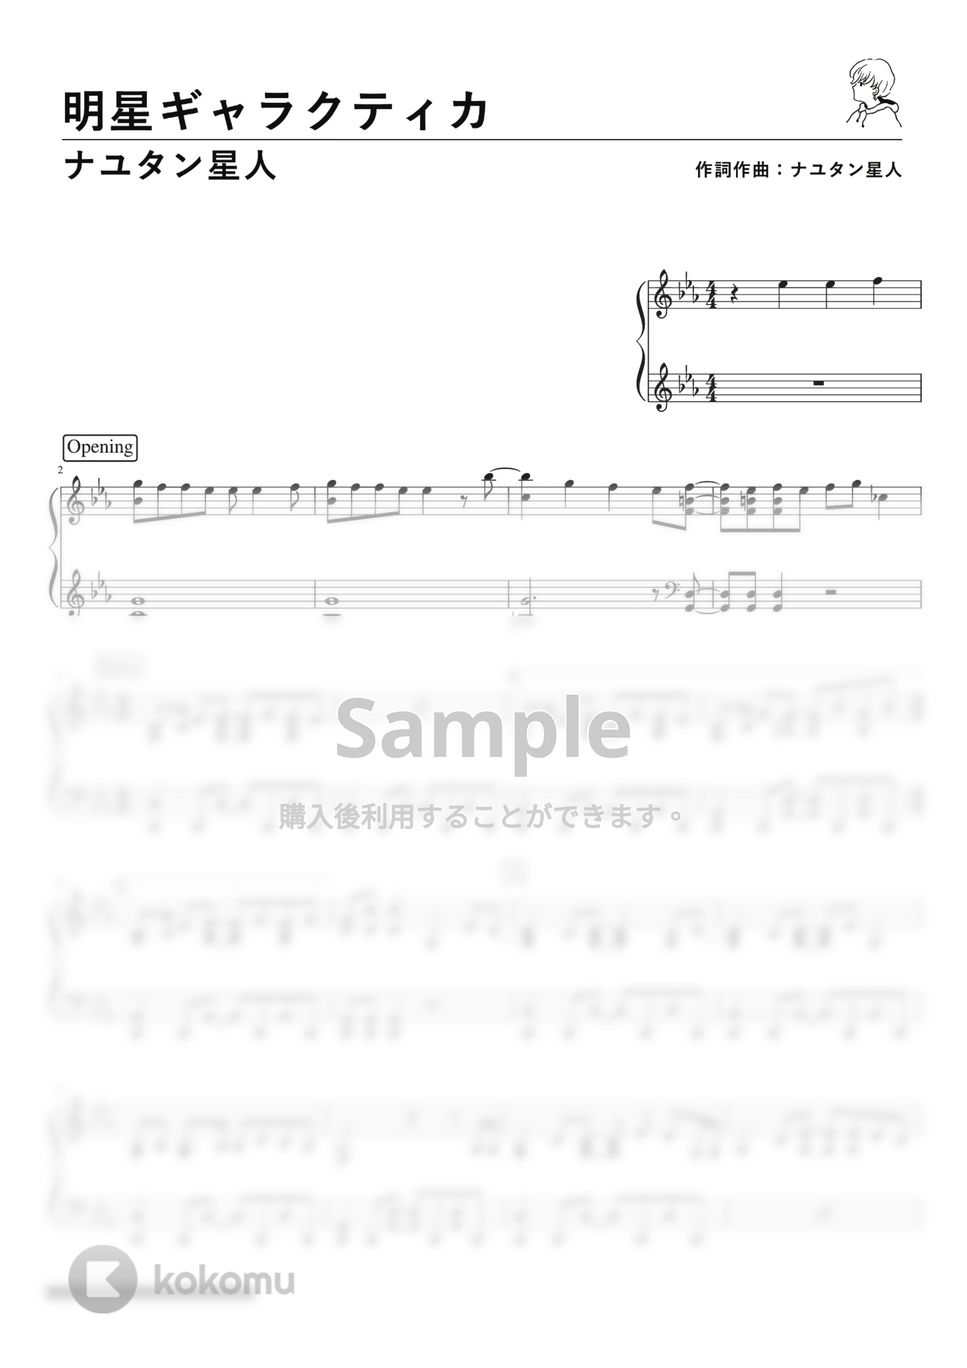 ナユタン星人 - 明星ギャラクティカ (Piano Solo) by 深根 / Fukane